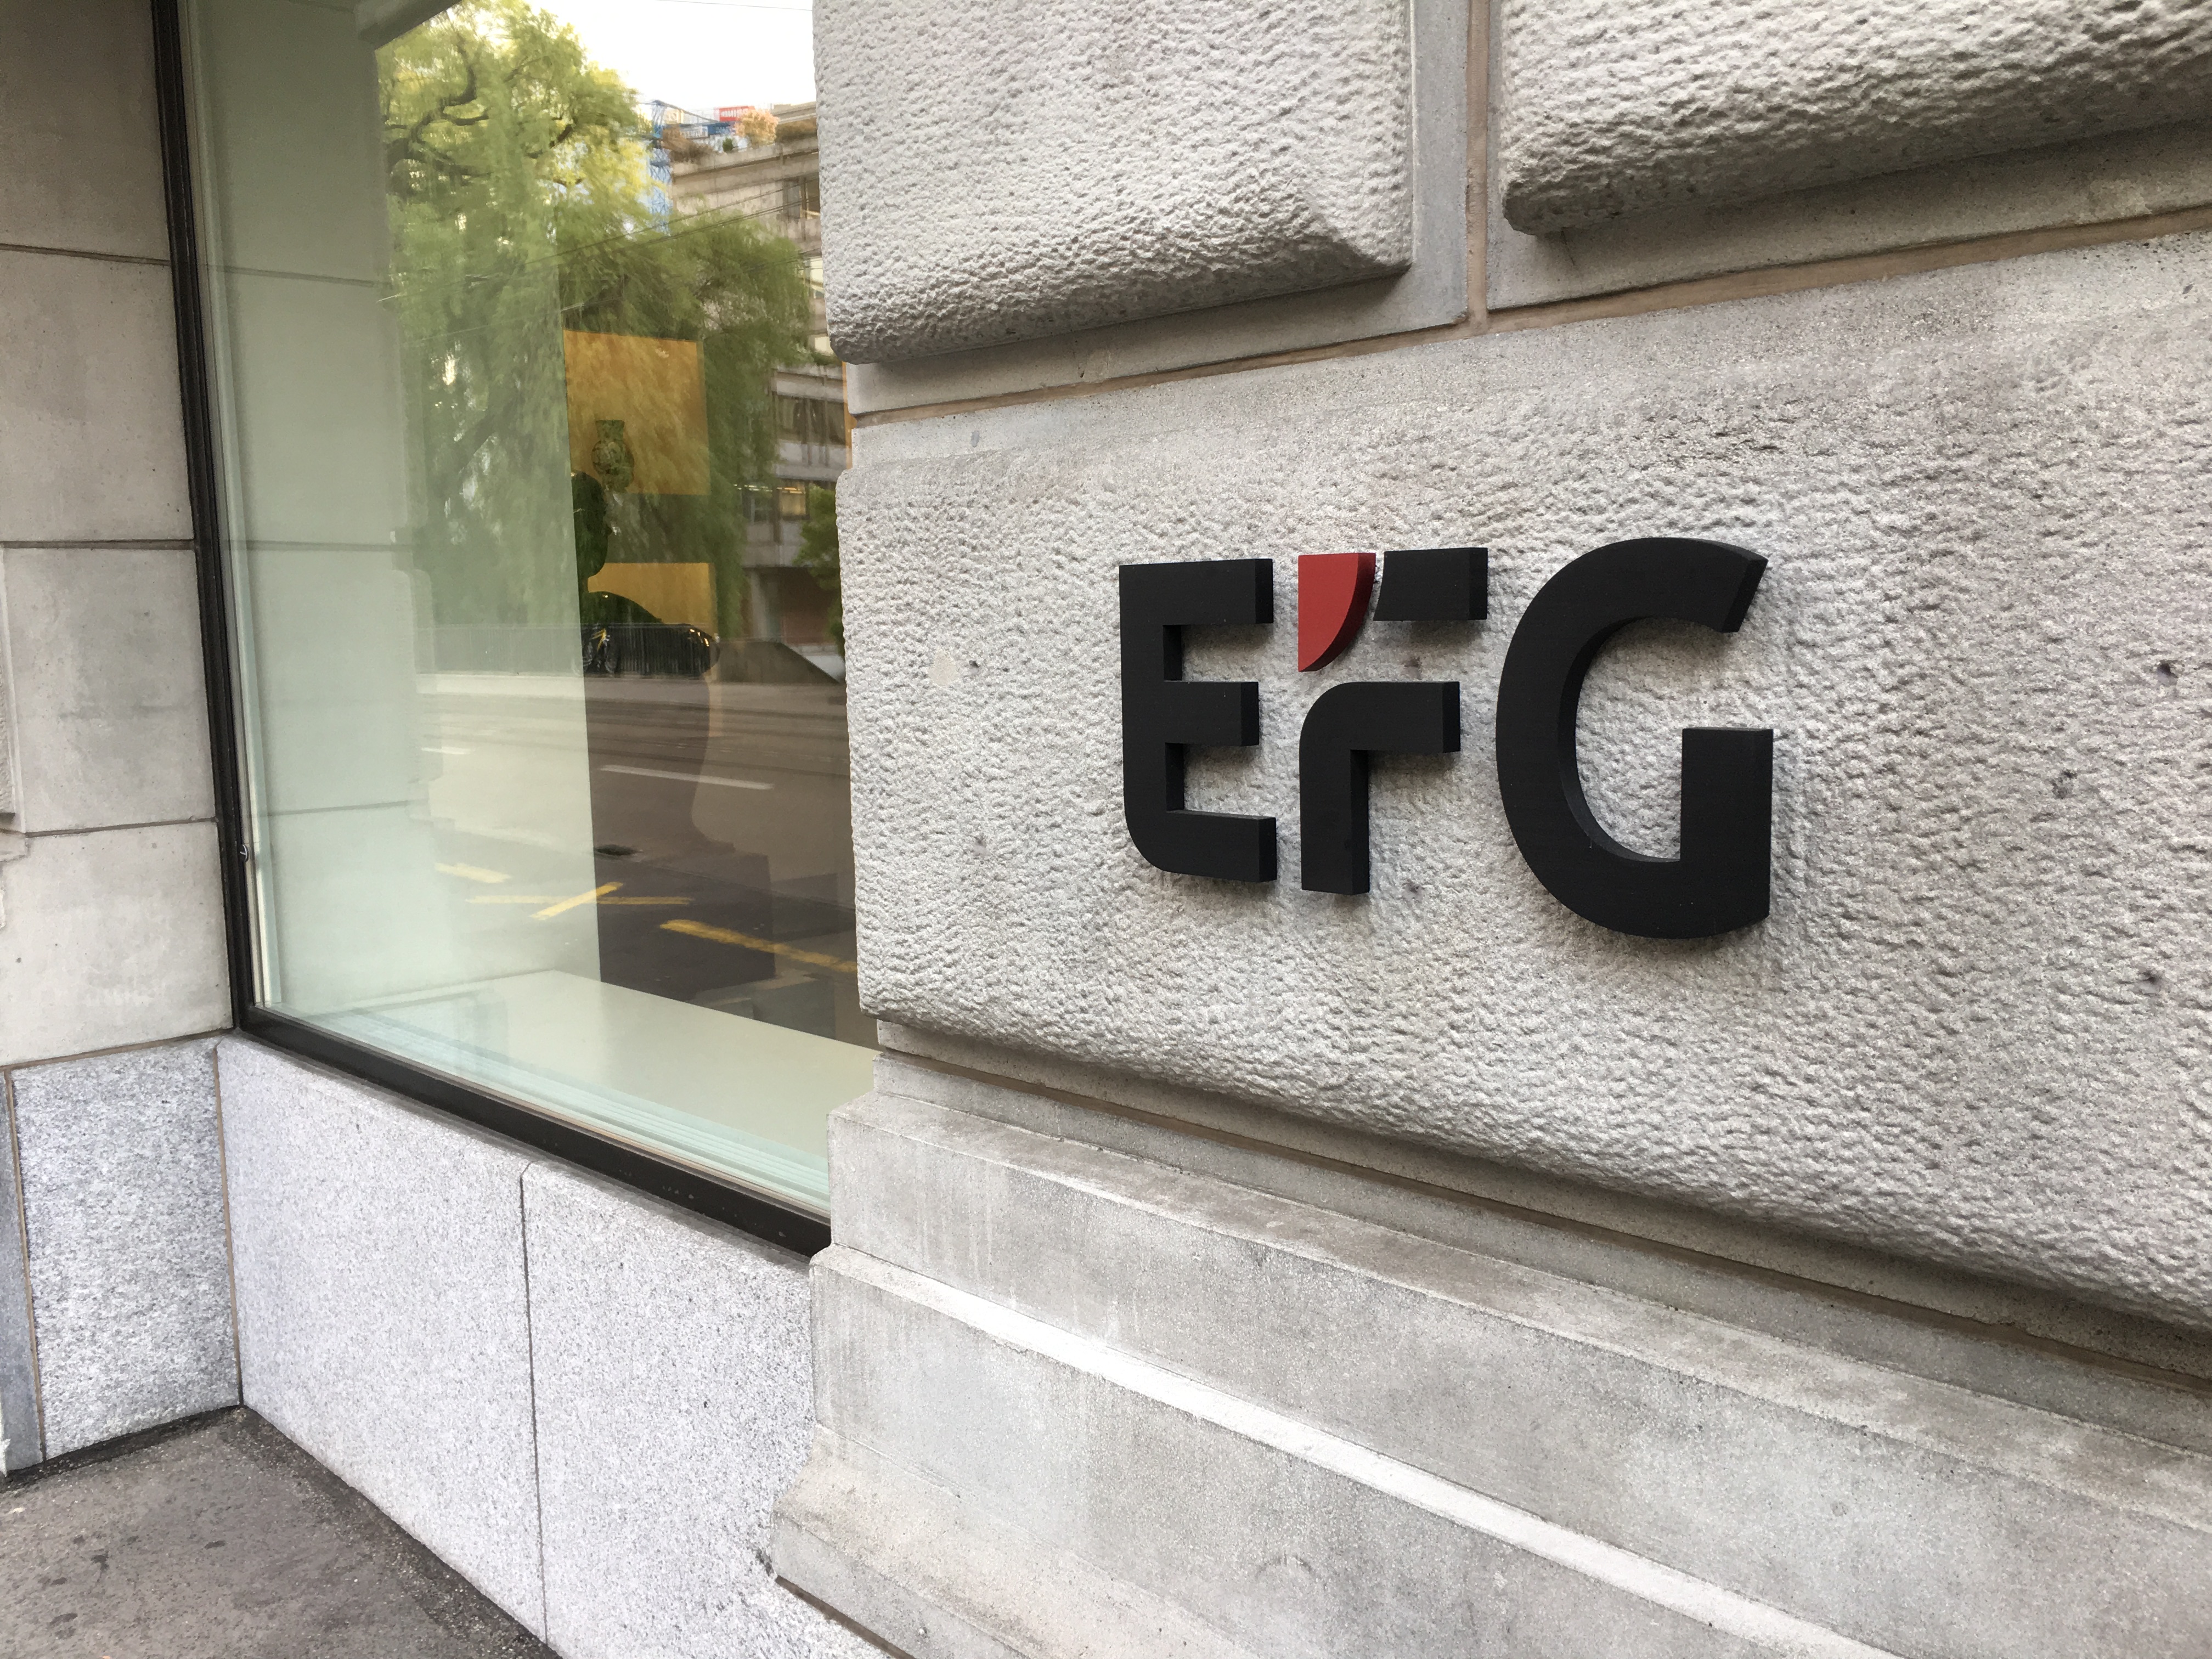 EFG-Aktie nach Dementi der Übernahmegerüchte unter Druck